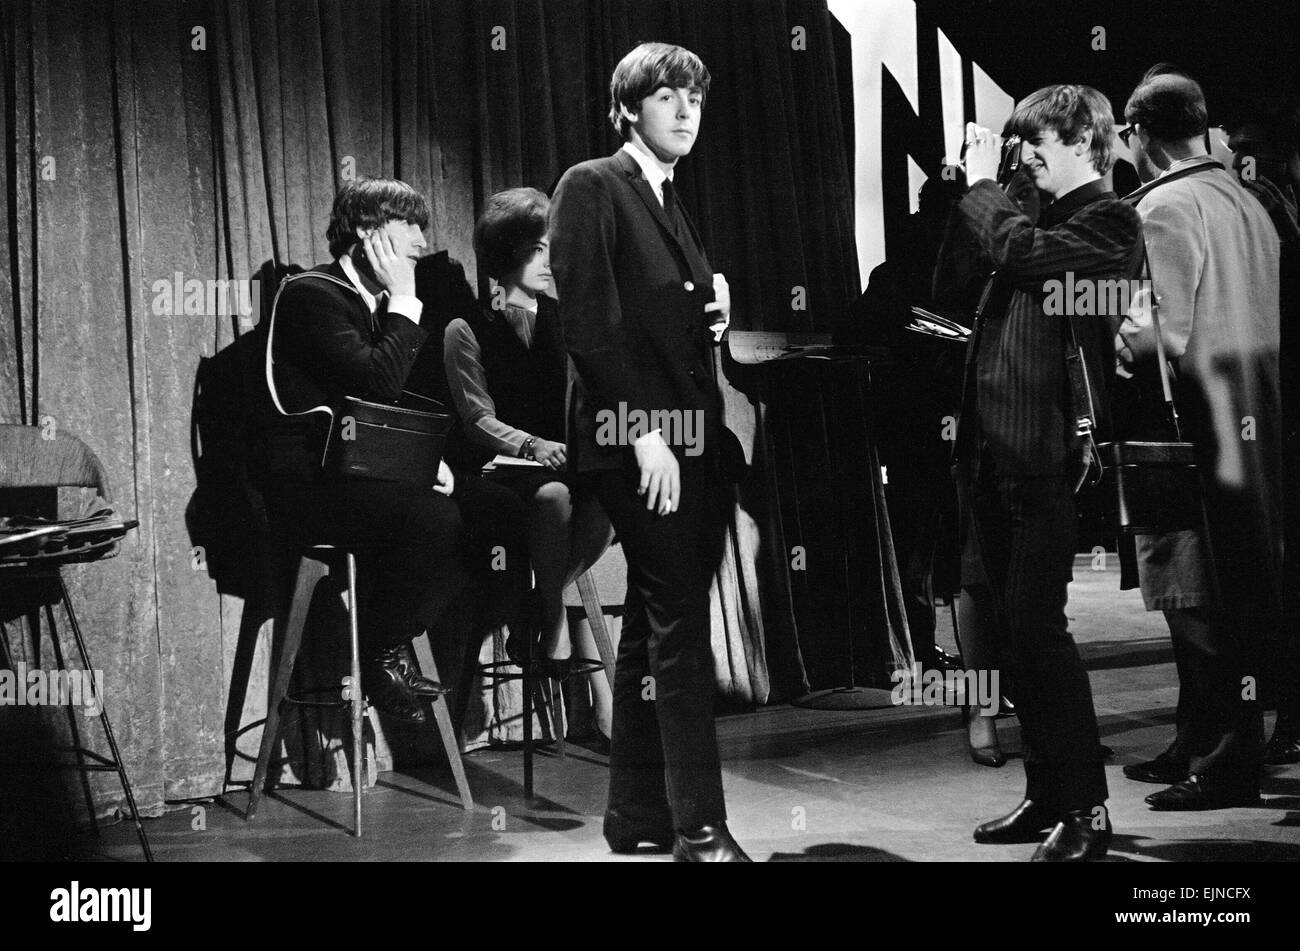 Ringo Starr tomando fotografías de Paul McCartney fumar en Nueva York durante la primera visita de los Beatles en los Estados Unidos. De febrero de 1964. Foto de stock